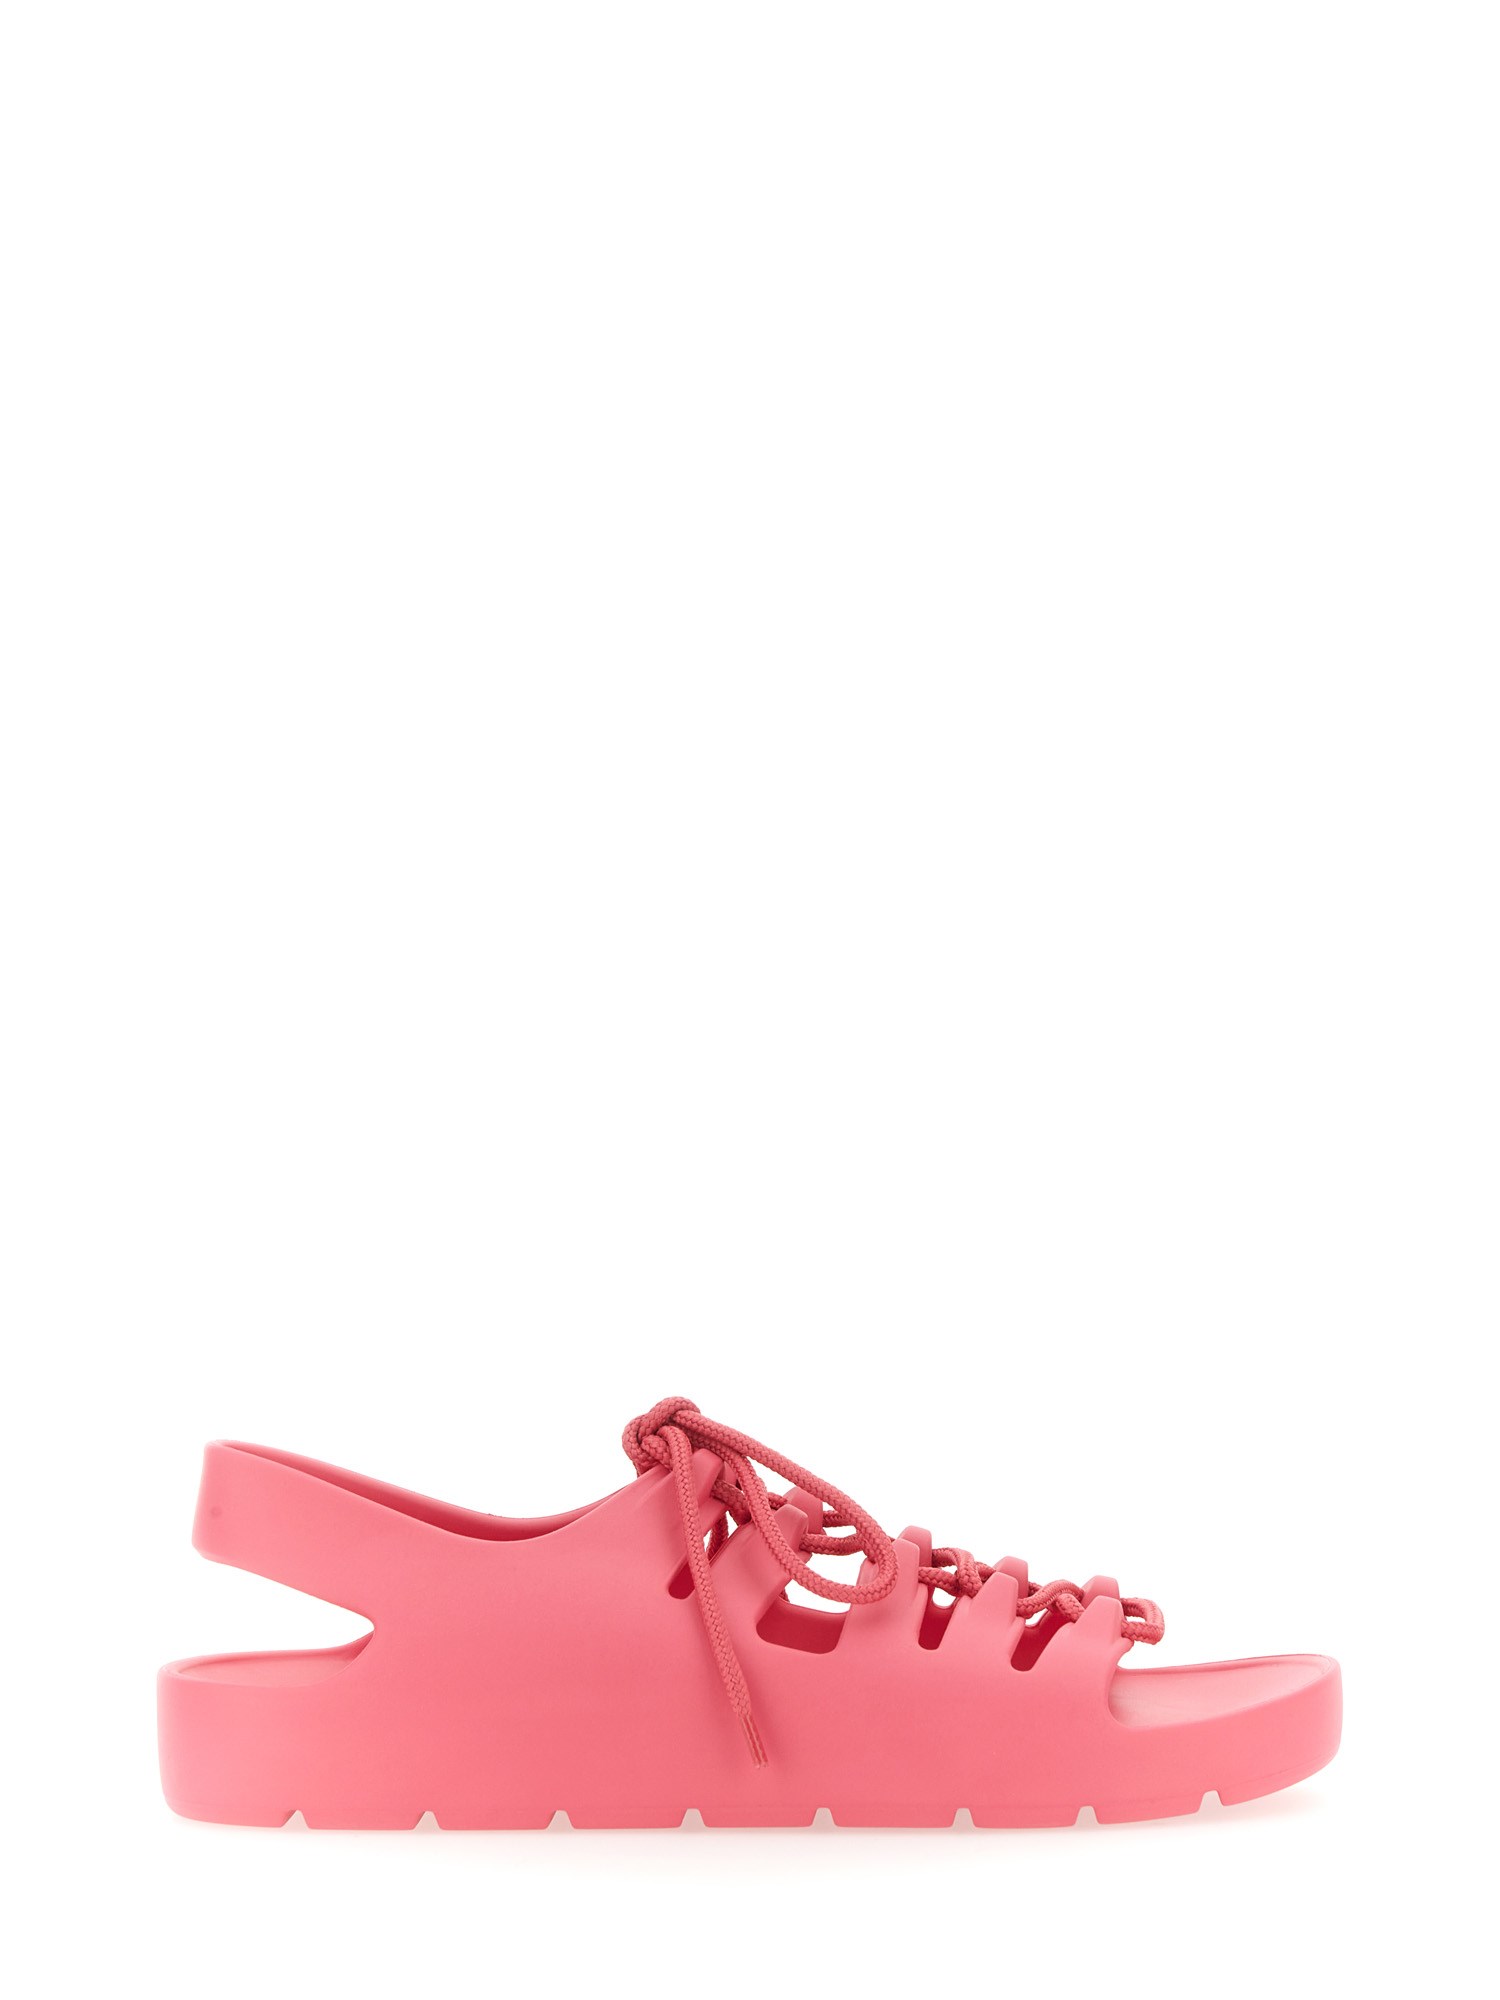 Bottega Veneta Jelly Sandal. In Pink